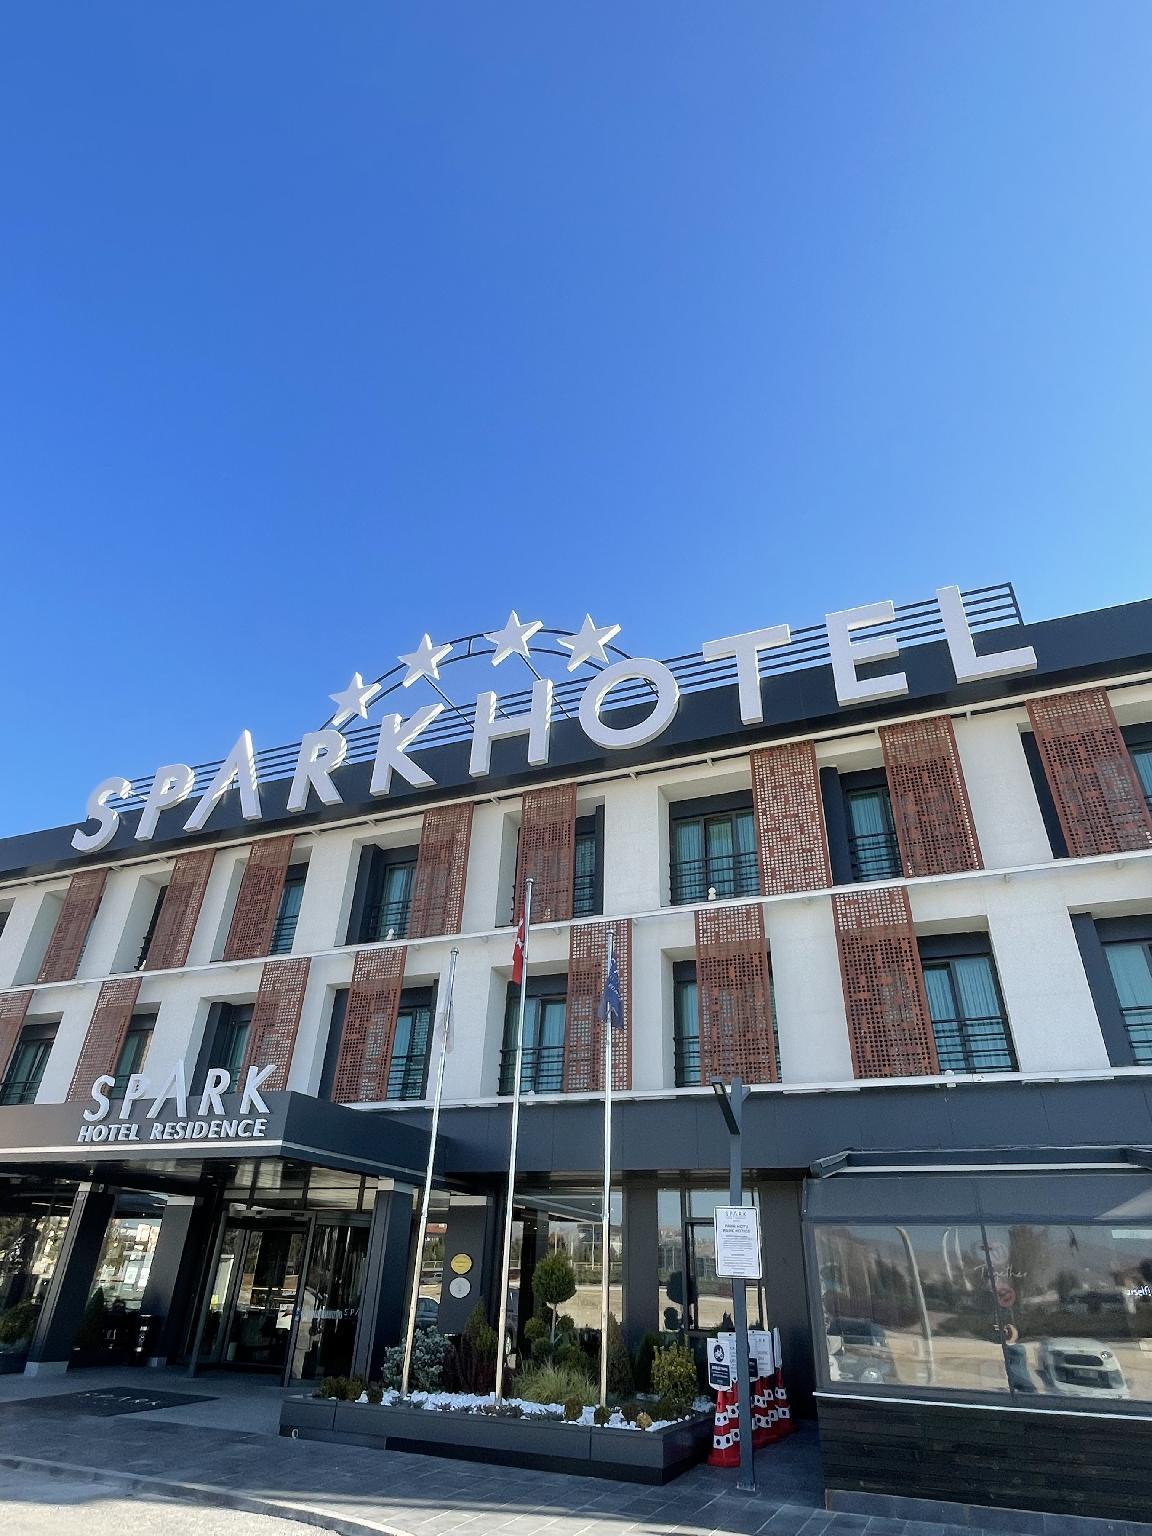 Spark Hotel Resi̇dence - Konya